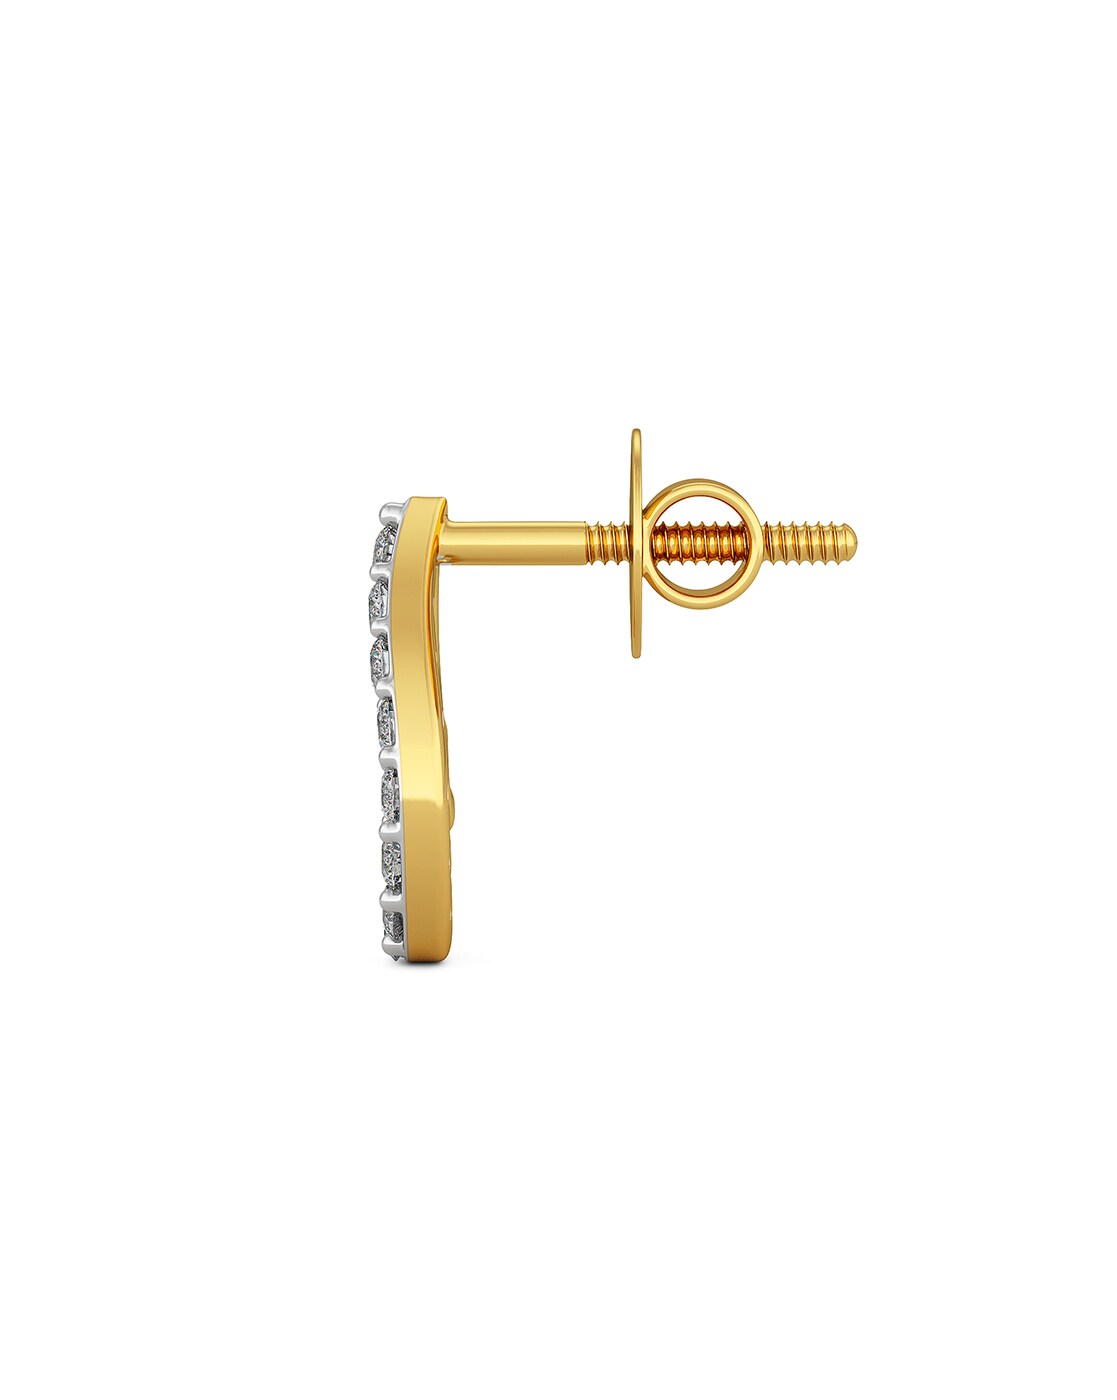 How to make men's earring | 24k gold earring | gold earring making - YouTube